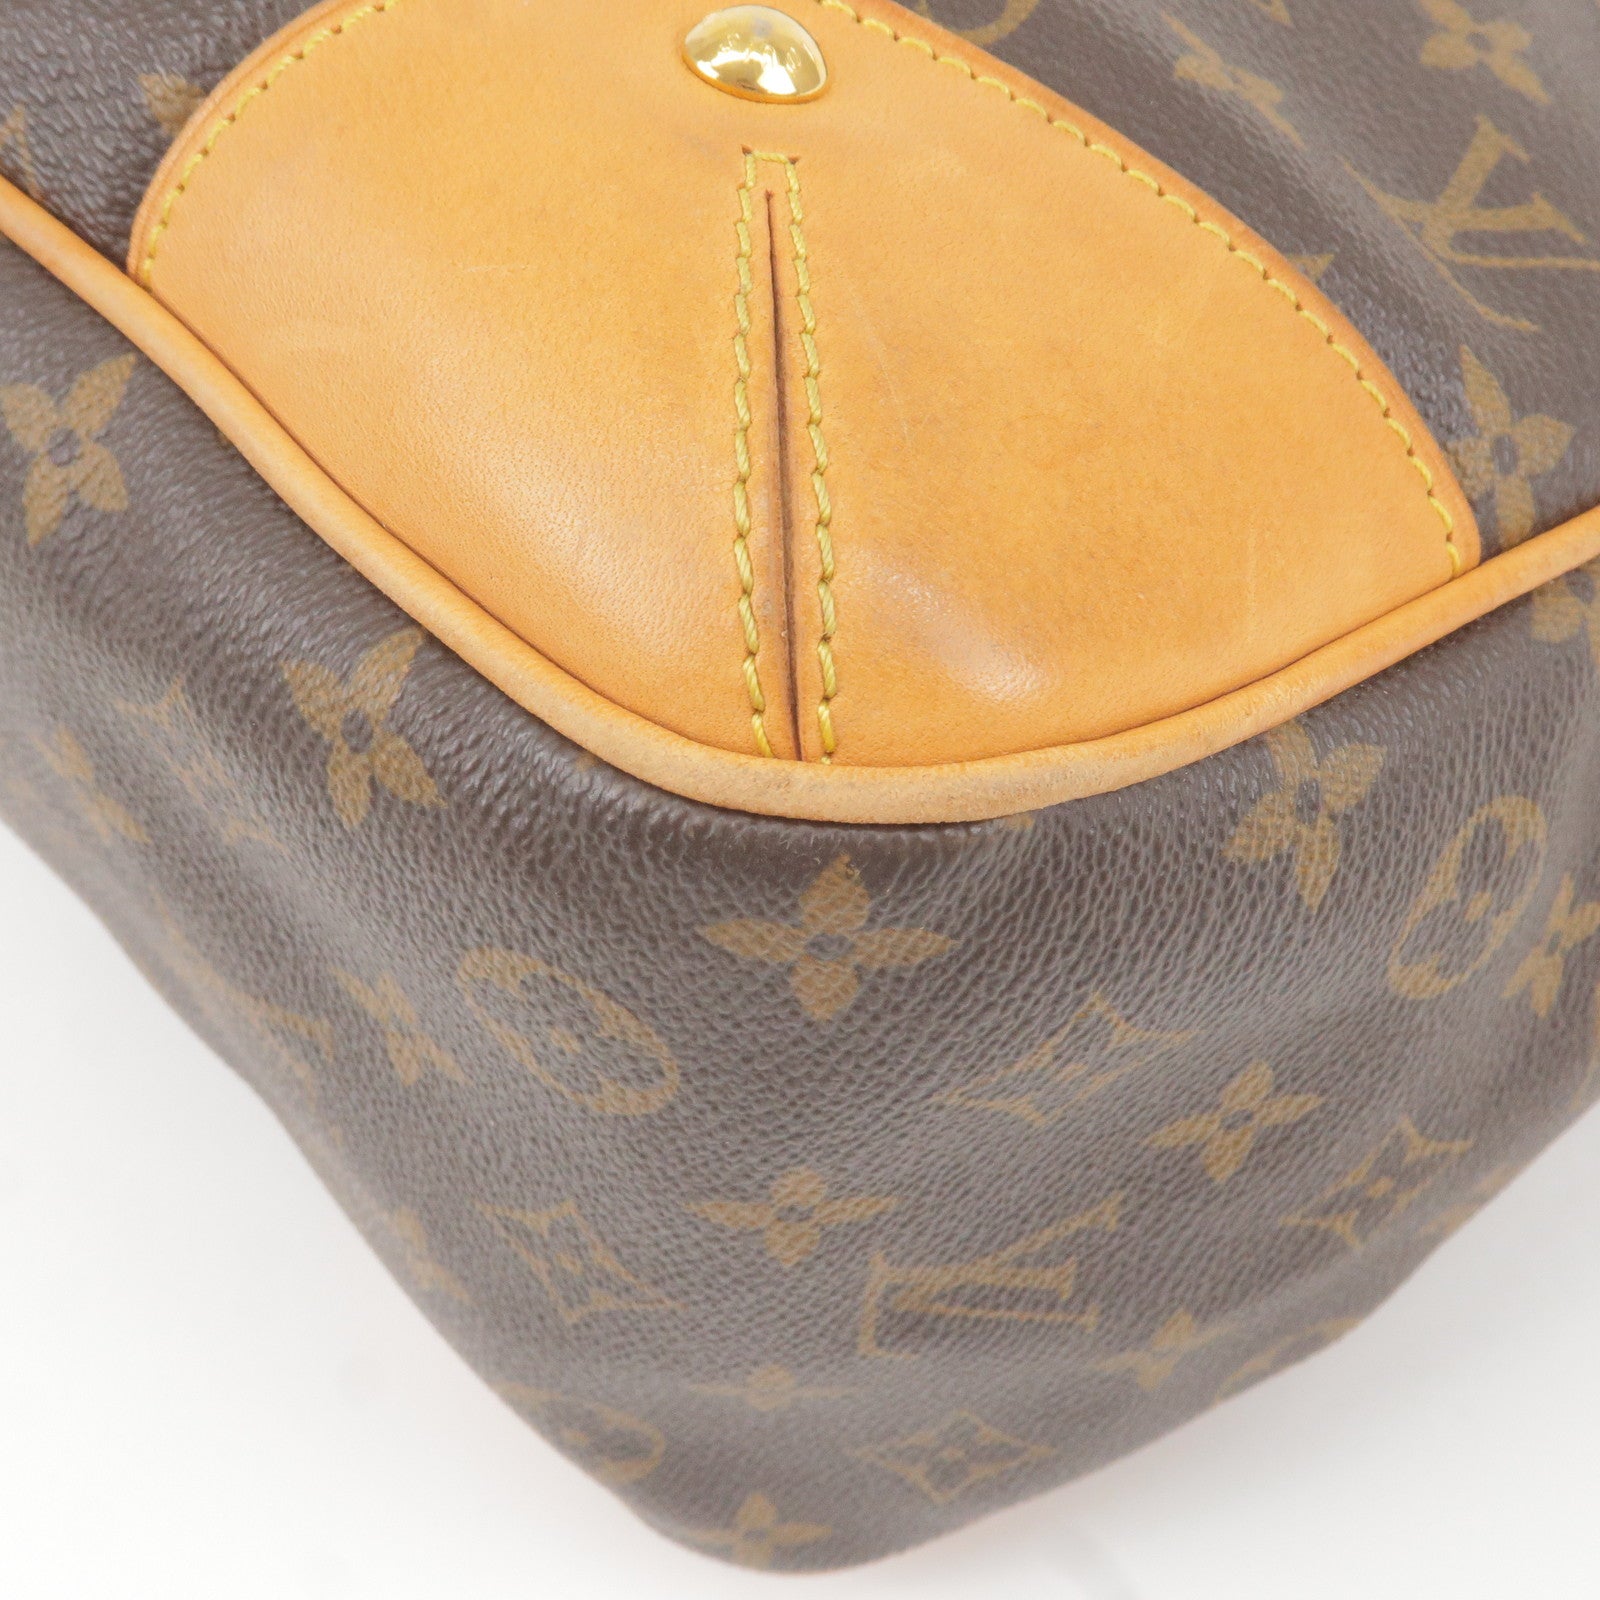 Auth Louis Vuitton Monogram Estrela MM M41232 2 way Shoulder bag